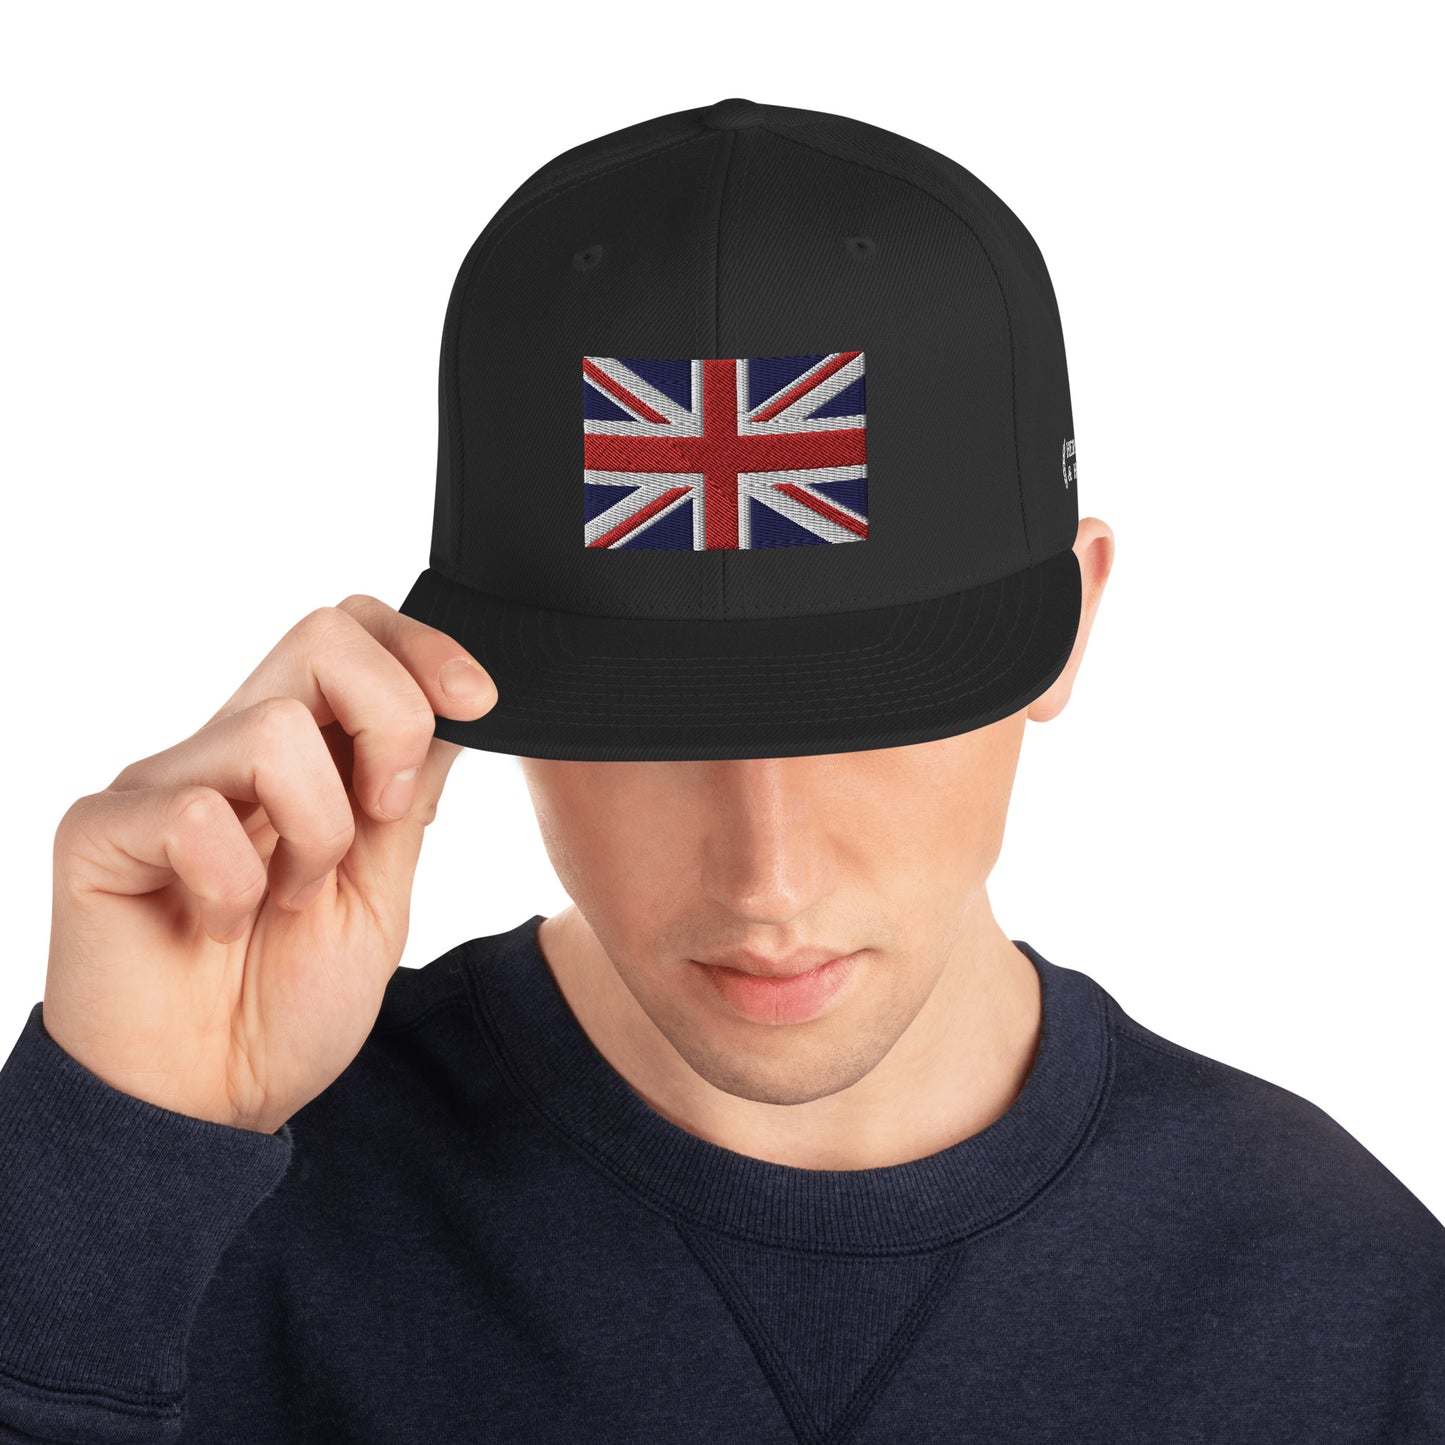 Heritage & Honor Snapback Cap 'United Kingdom' 2